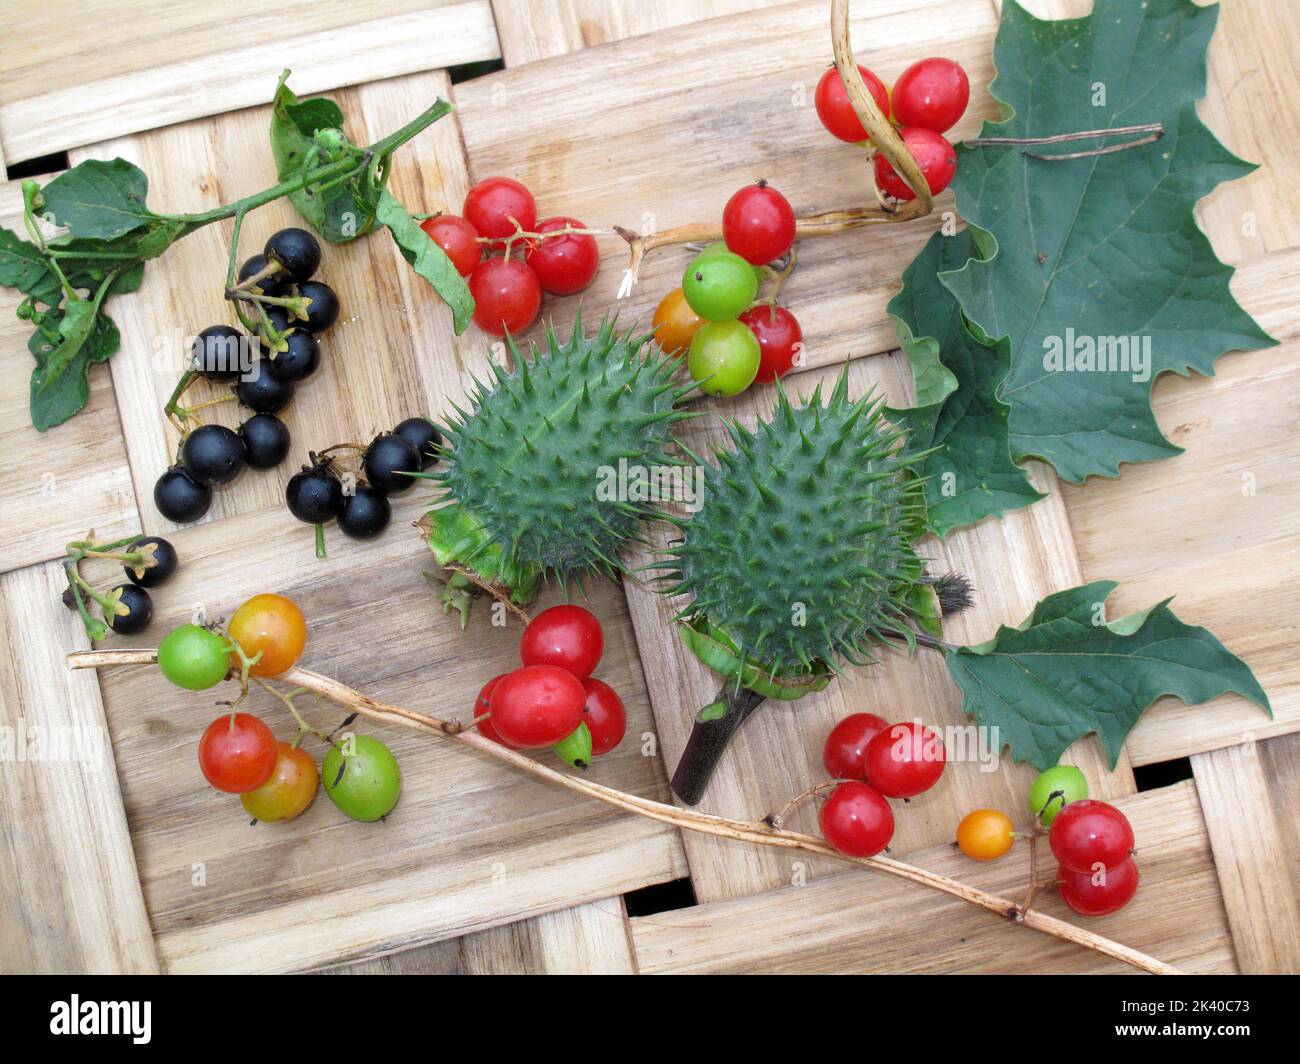 Toxic fruits that have medicinal uses and that bear fruit in autumn (Datura stramonium, Dioscorea communis or Tamus communis and Solanum nigrum) Stock Photo